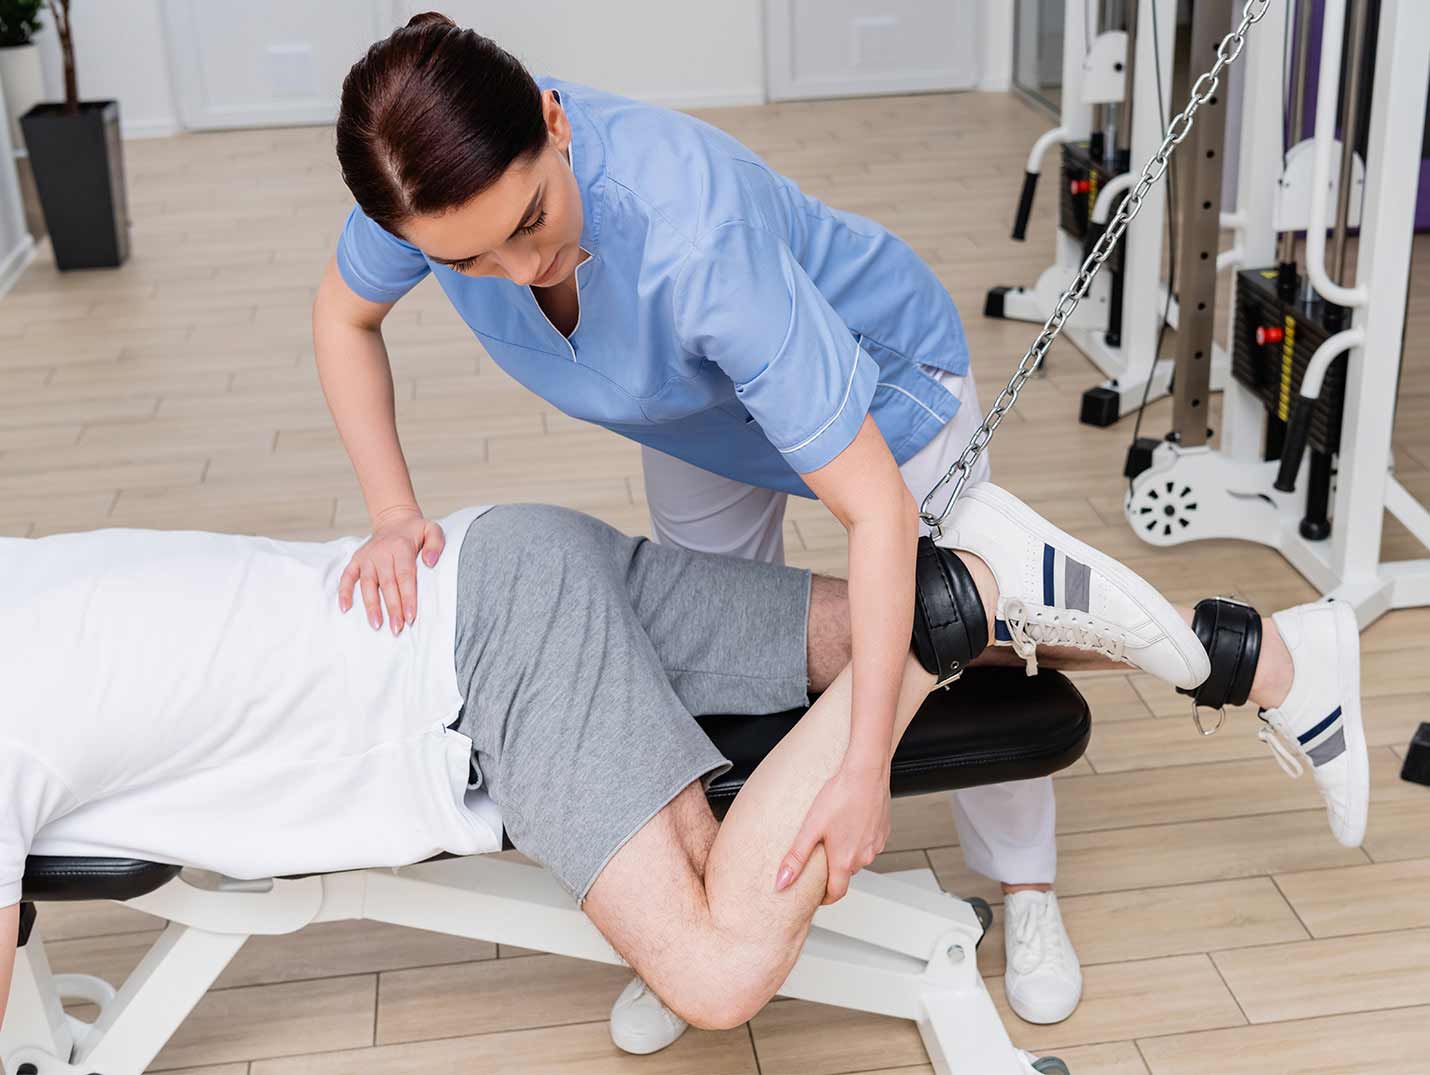 Doctora ayudando a un paciente a realizar ejercicios de rehabilitación a su pierna izquierda con un equipo de gimnasio